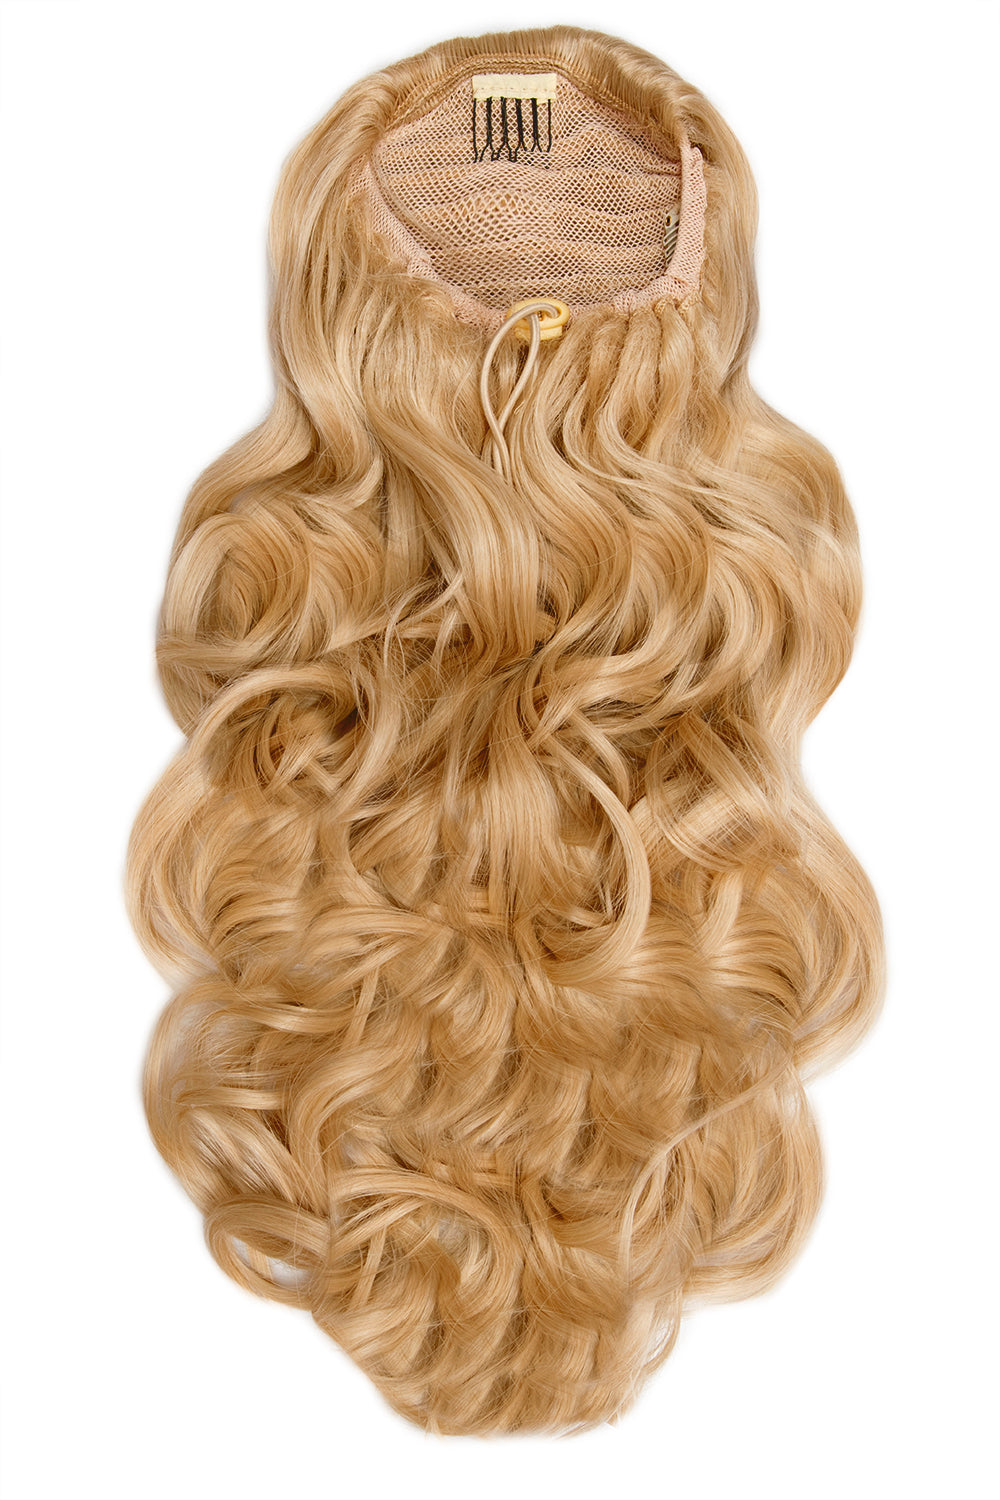 Curly Glam 22" Drawstring Ponytail - Caramel Blonde